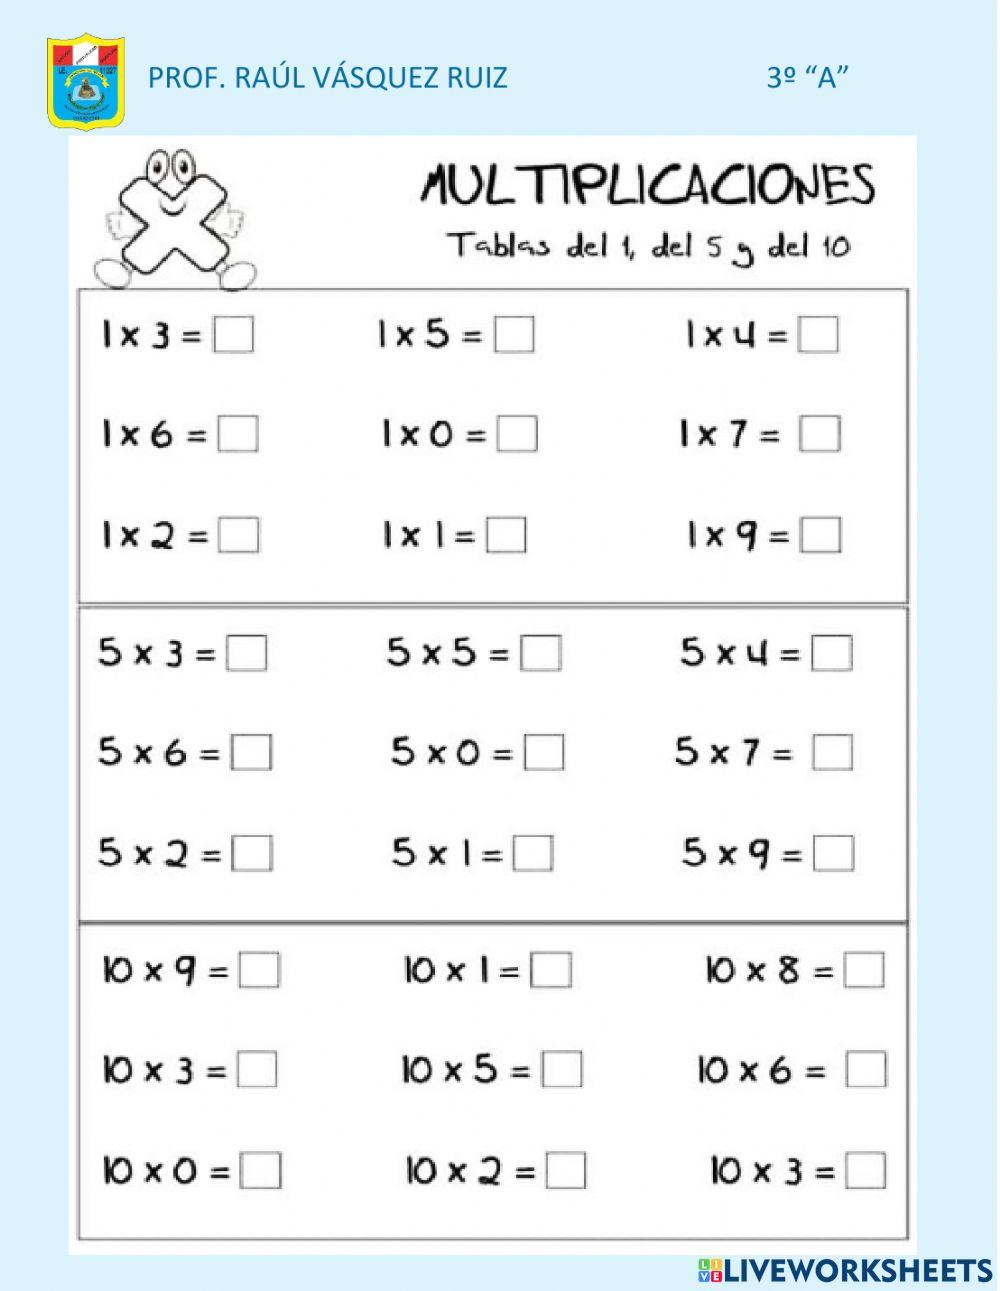 Multiplico 1